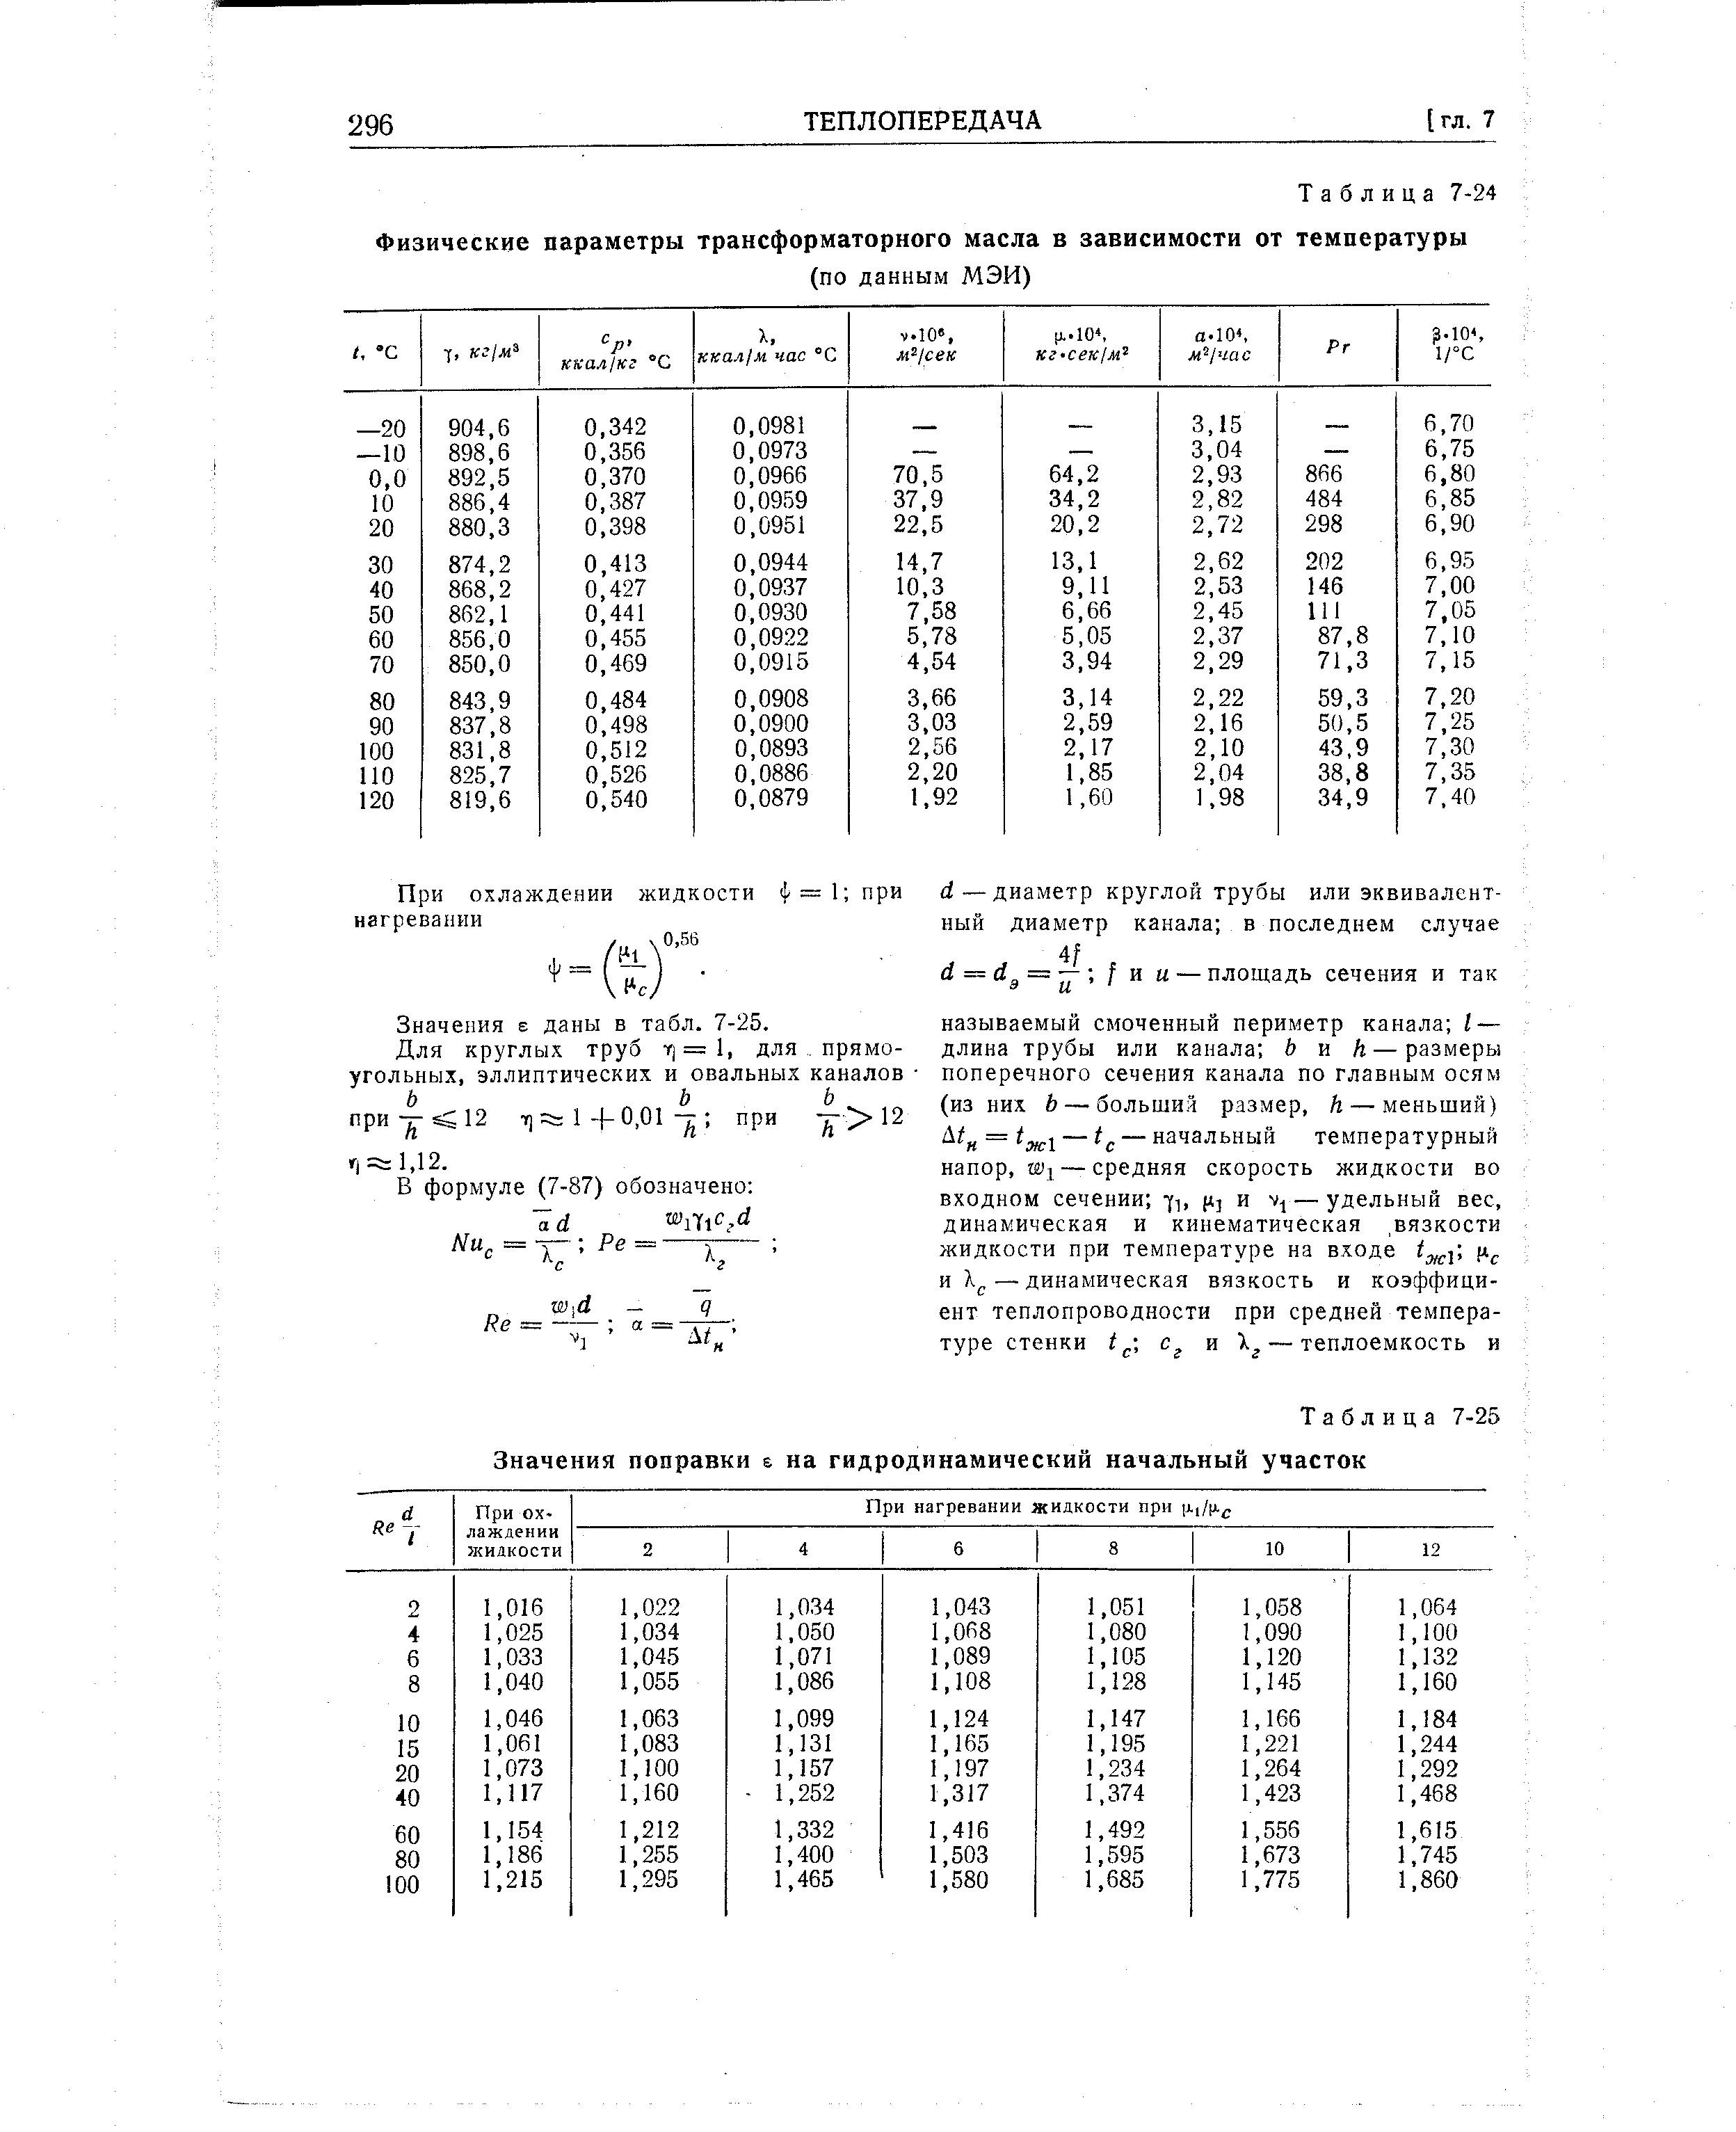 Таблица температуры трансформаторного масла